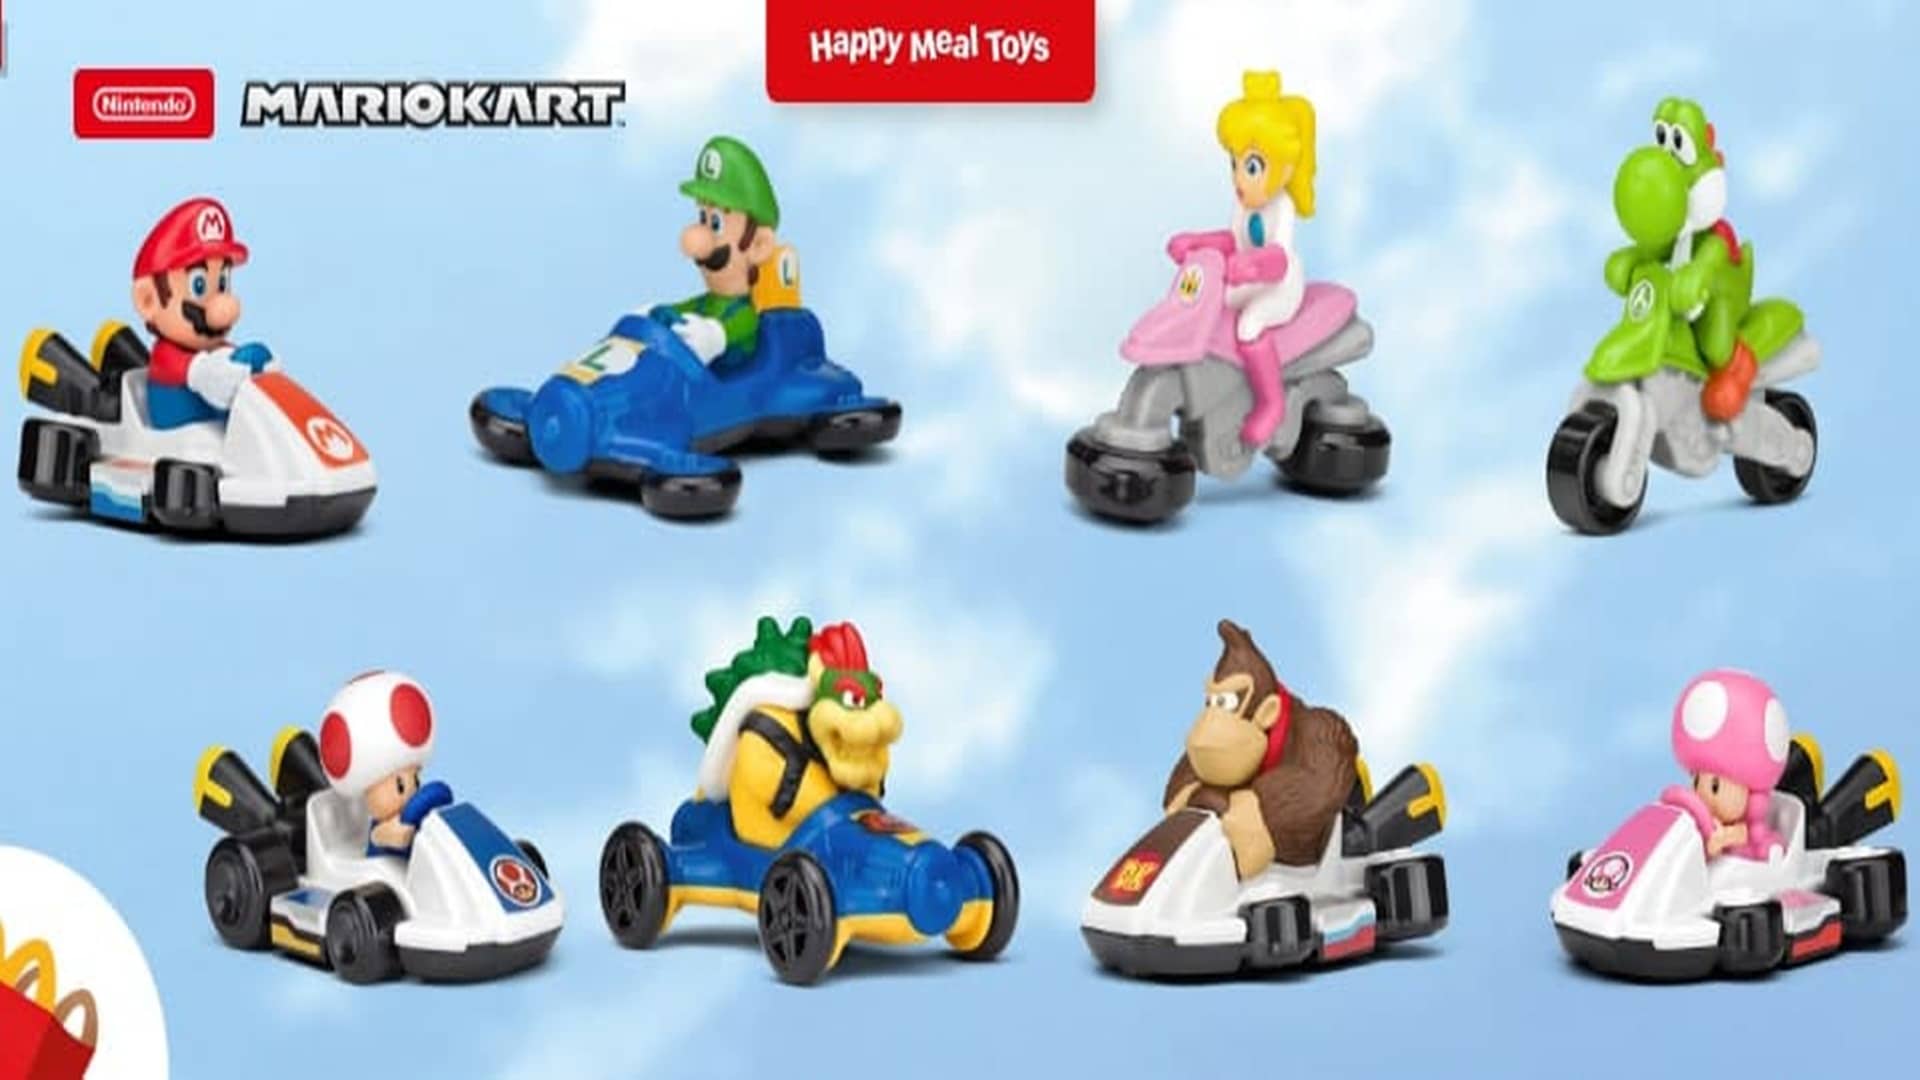 Juguetes de Mario Kart estarán disponibles en los Happy Meals de McDonald's, GamersRD